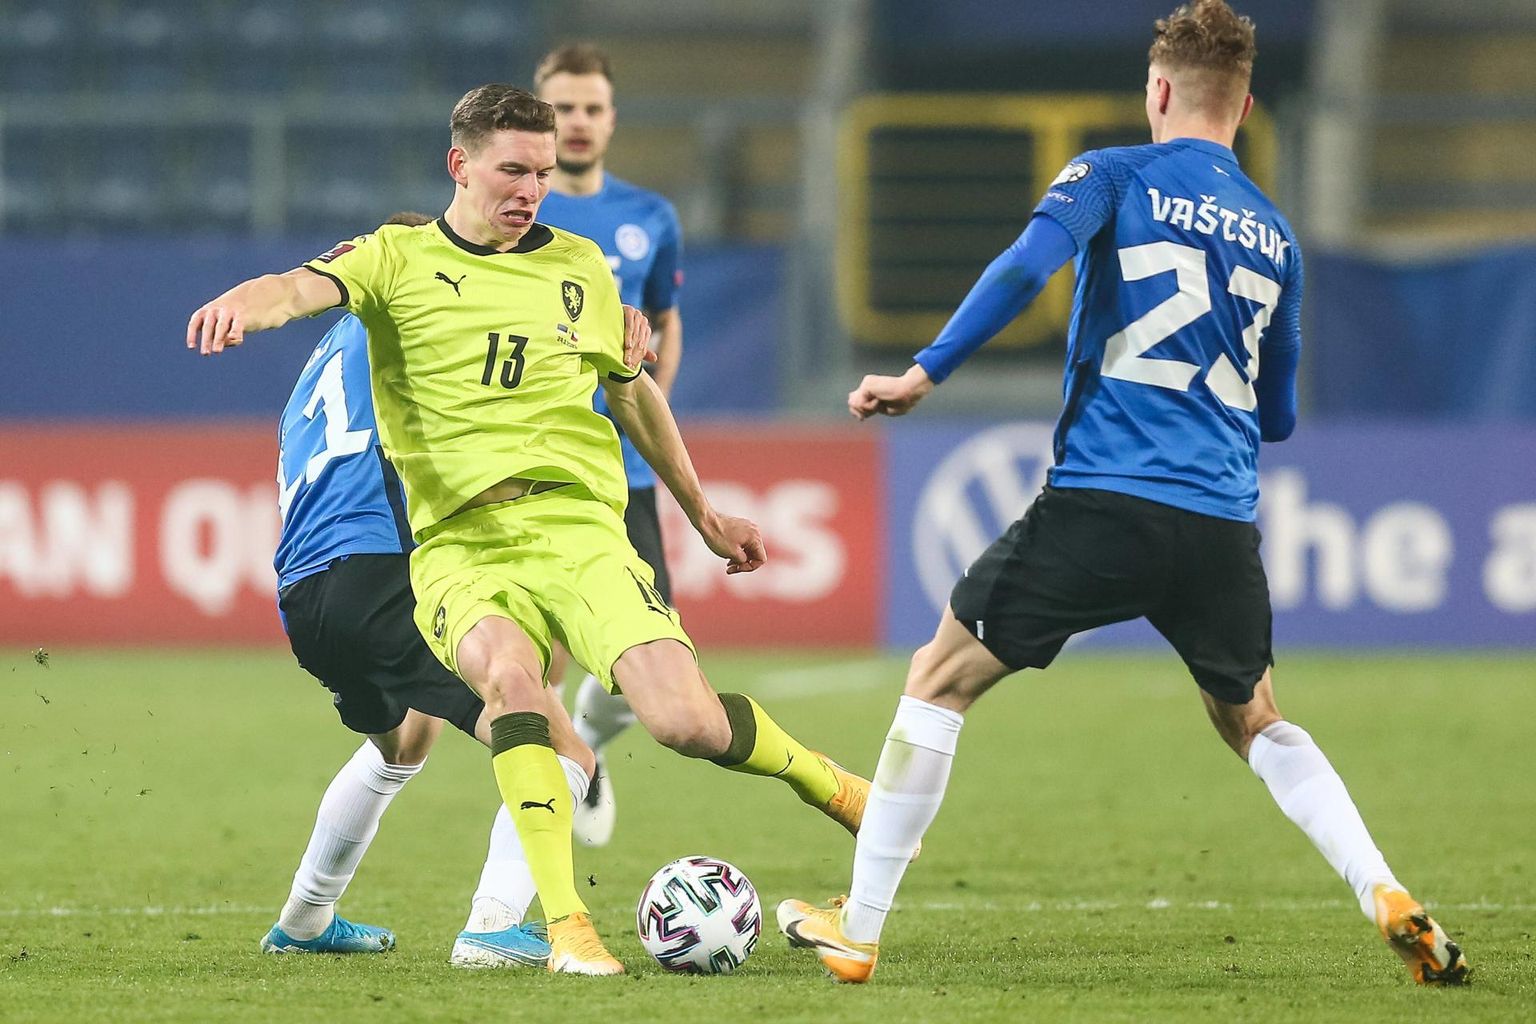 Eesti-Tšehhi jalgpallimatš pakkus palju positiivset.